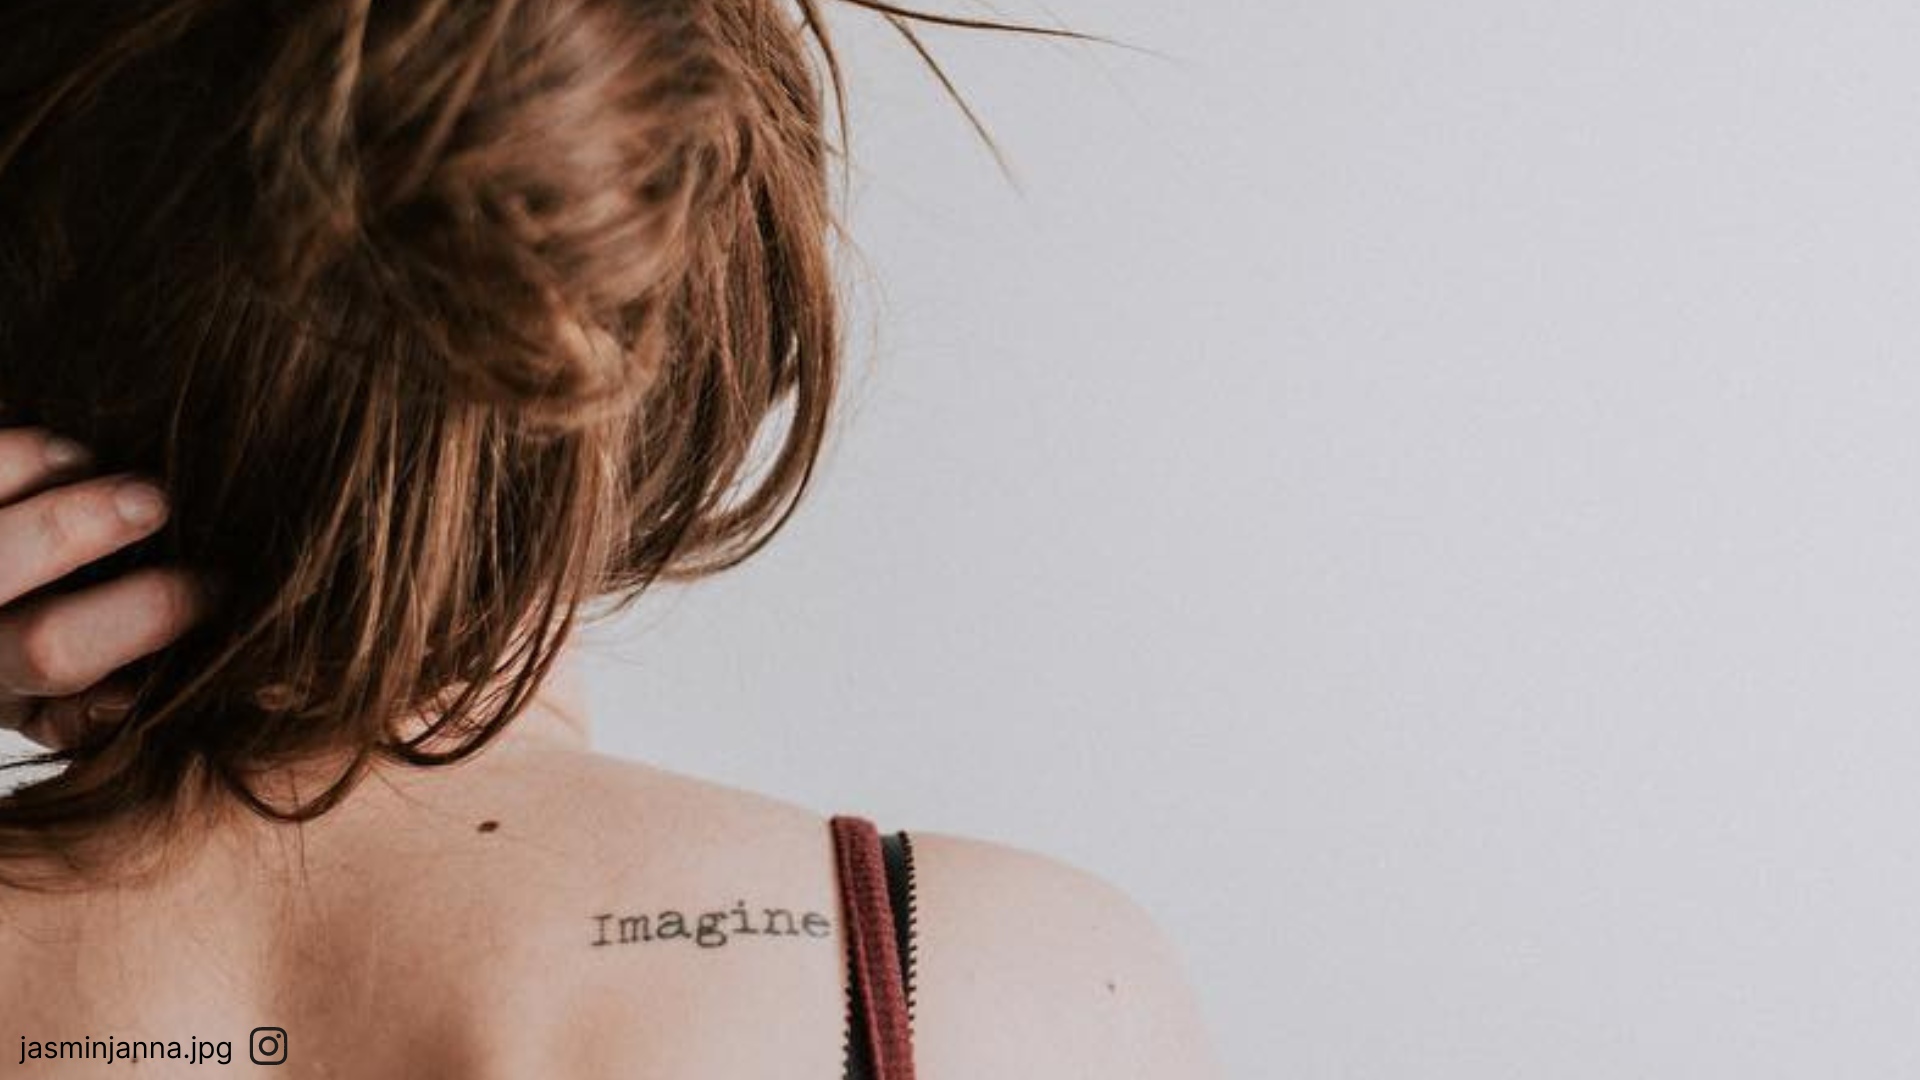 tatuagens de uma palavra